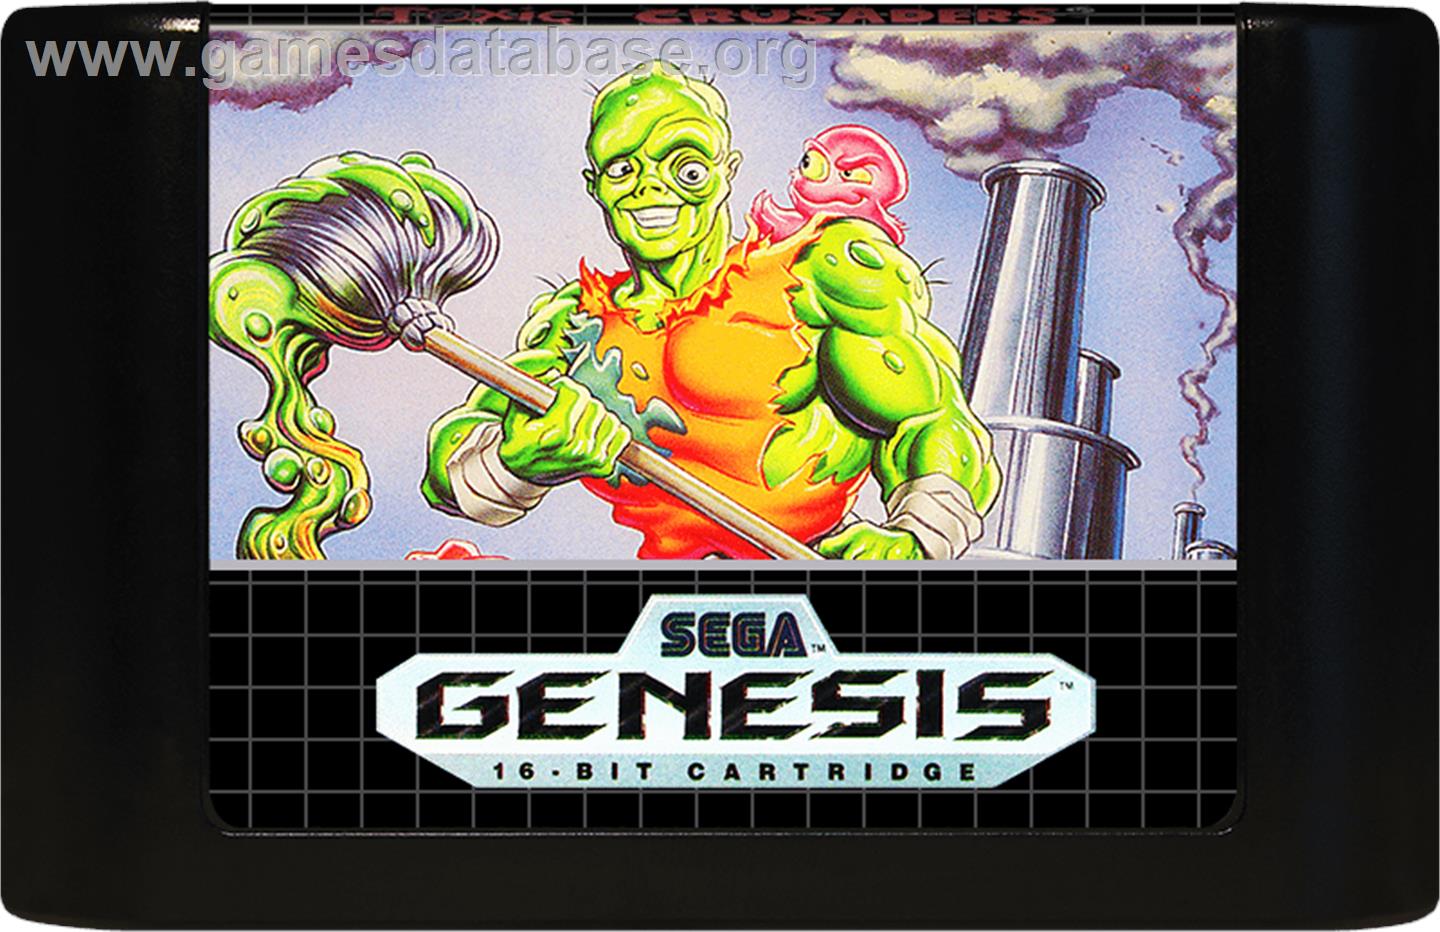 Toxic Crusaders - Sega Genesis - Artwork - Cartridge